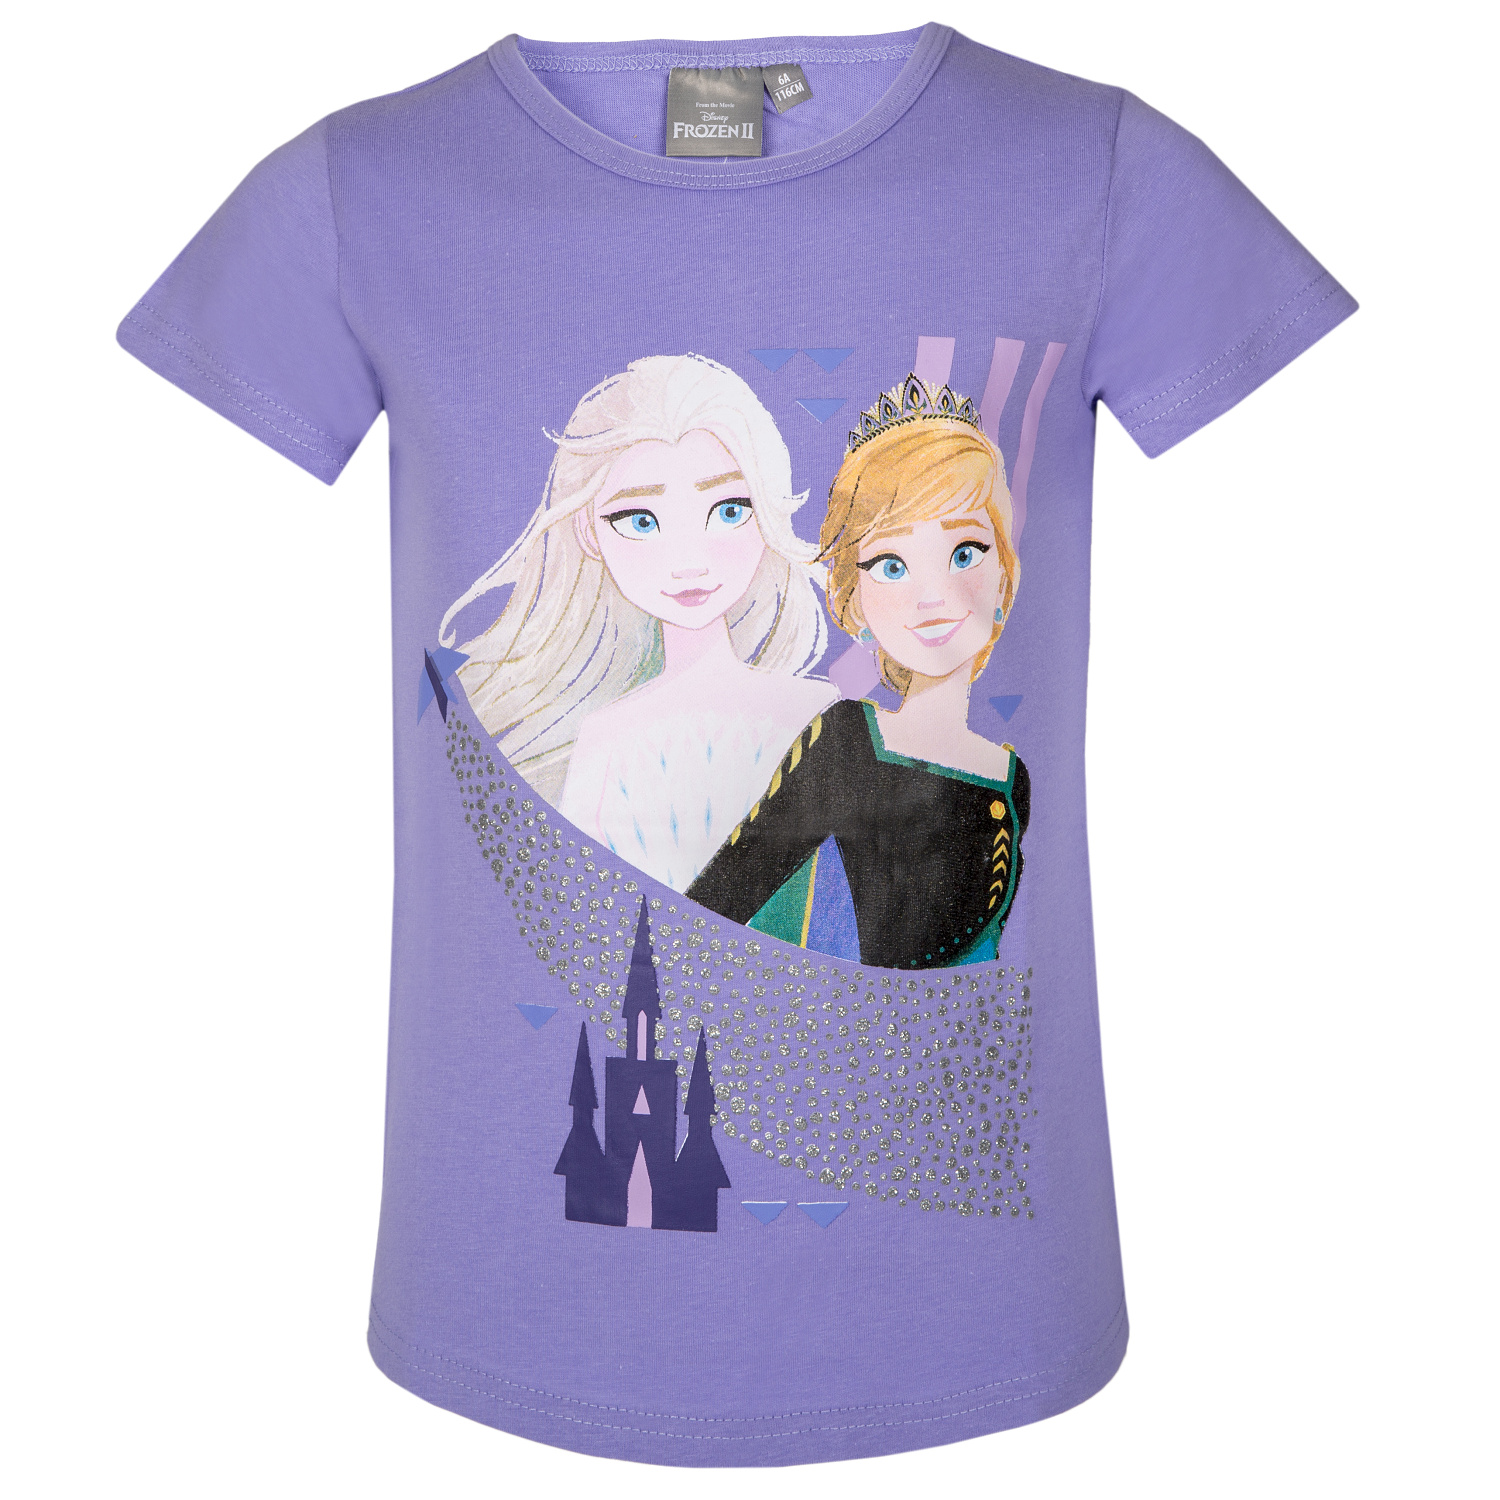 Frozen - licence Dívčí tričko - Frozen 205, fialková Barva: Fialková, Velikost: 104